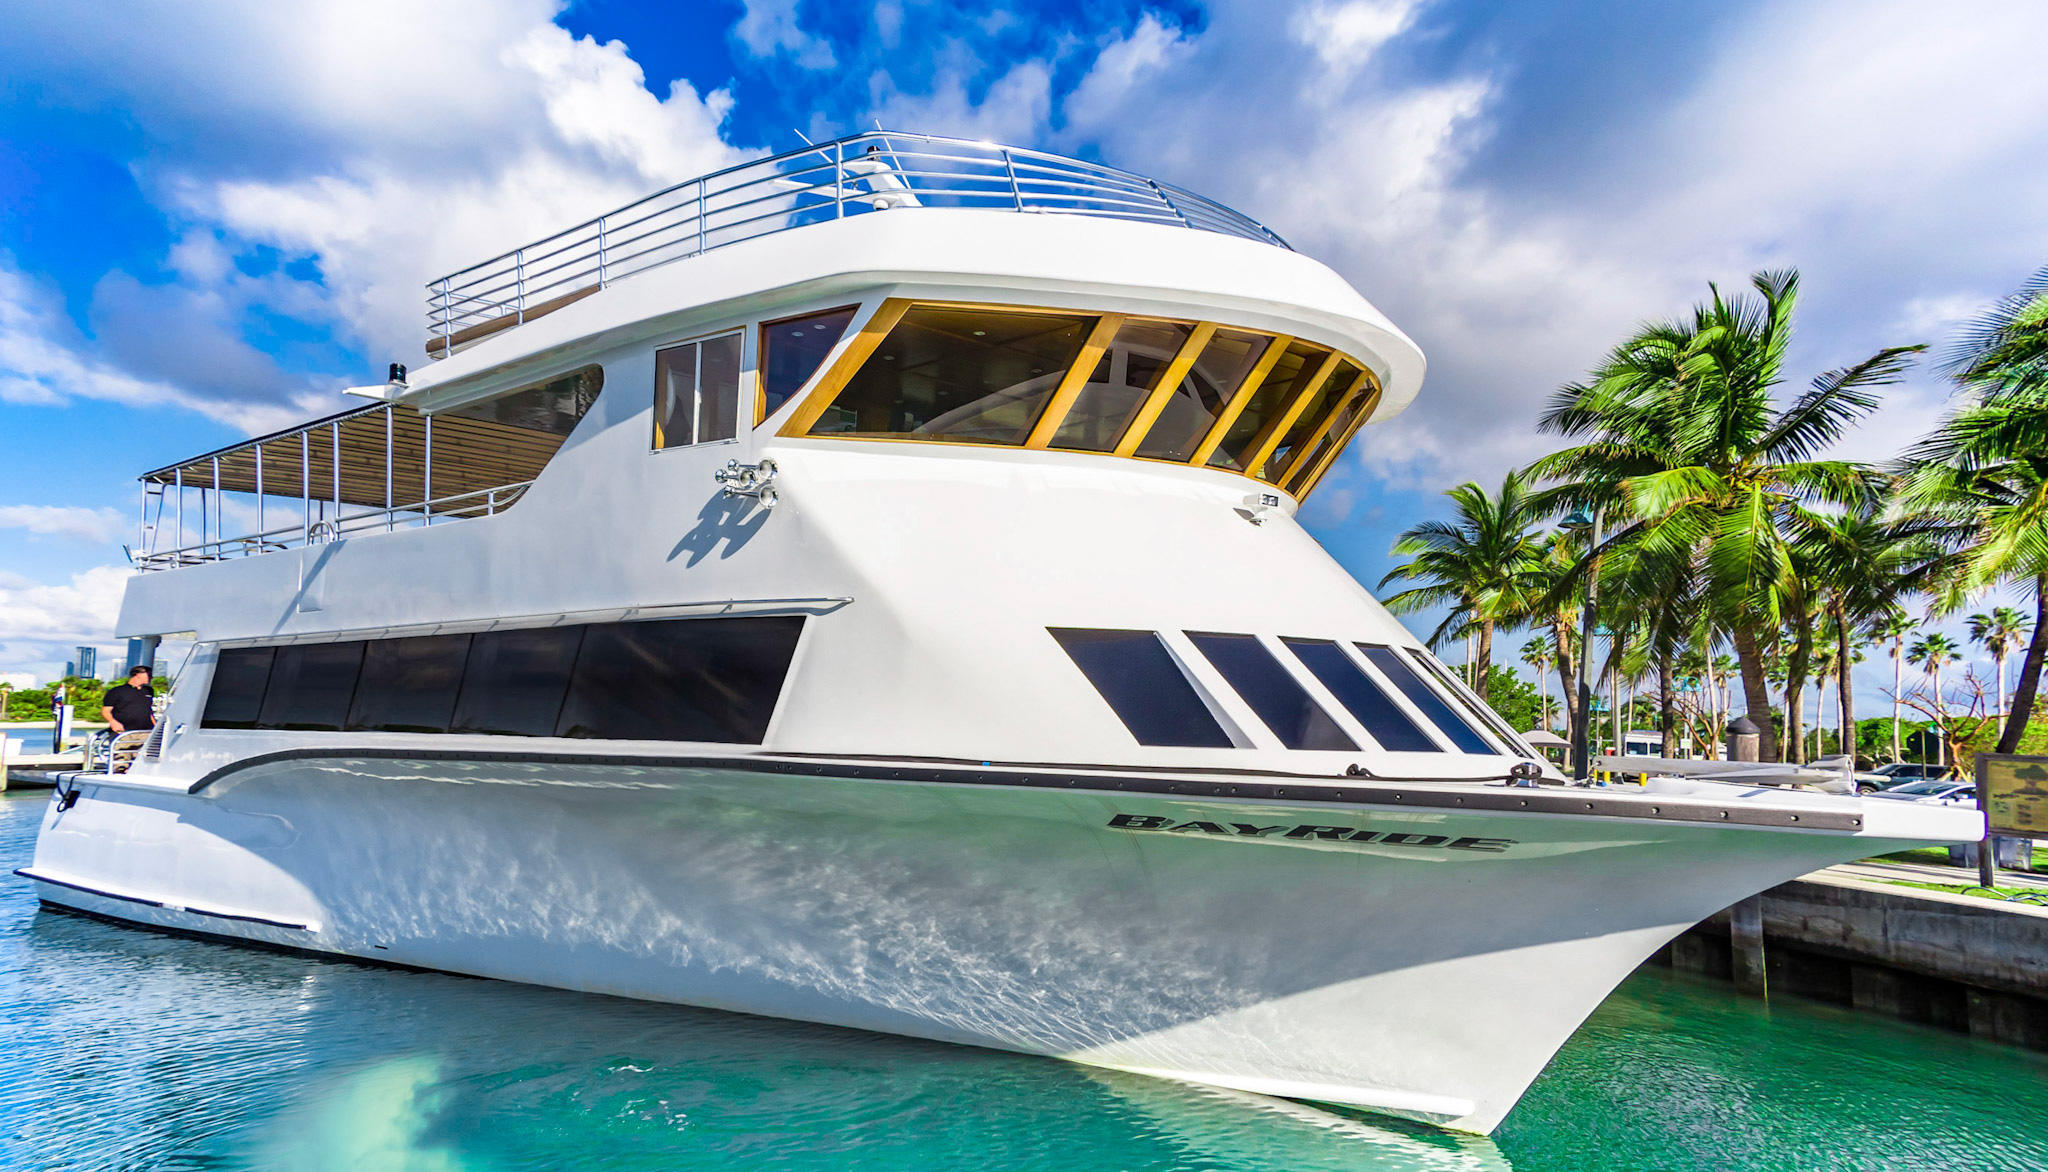 Boat Tour in Miami - Miami On The Water